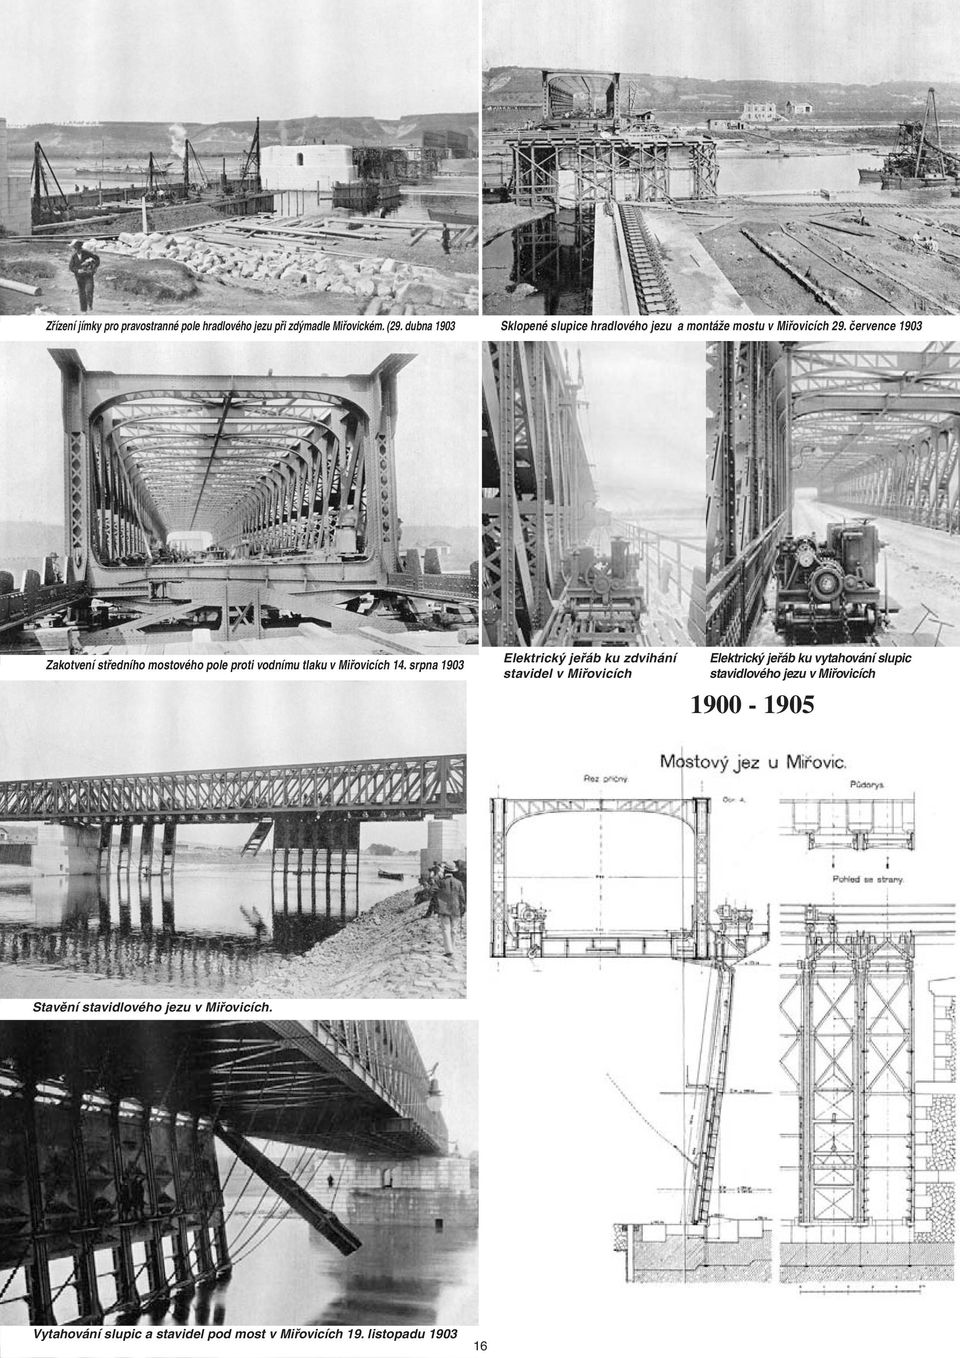 července 1903 Zakotvení středního mostového pole proti vodnímu tlaku v Miřovicích 14.